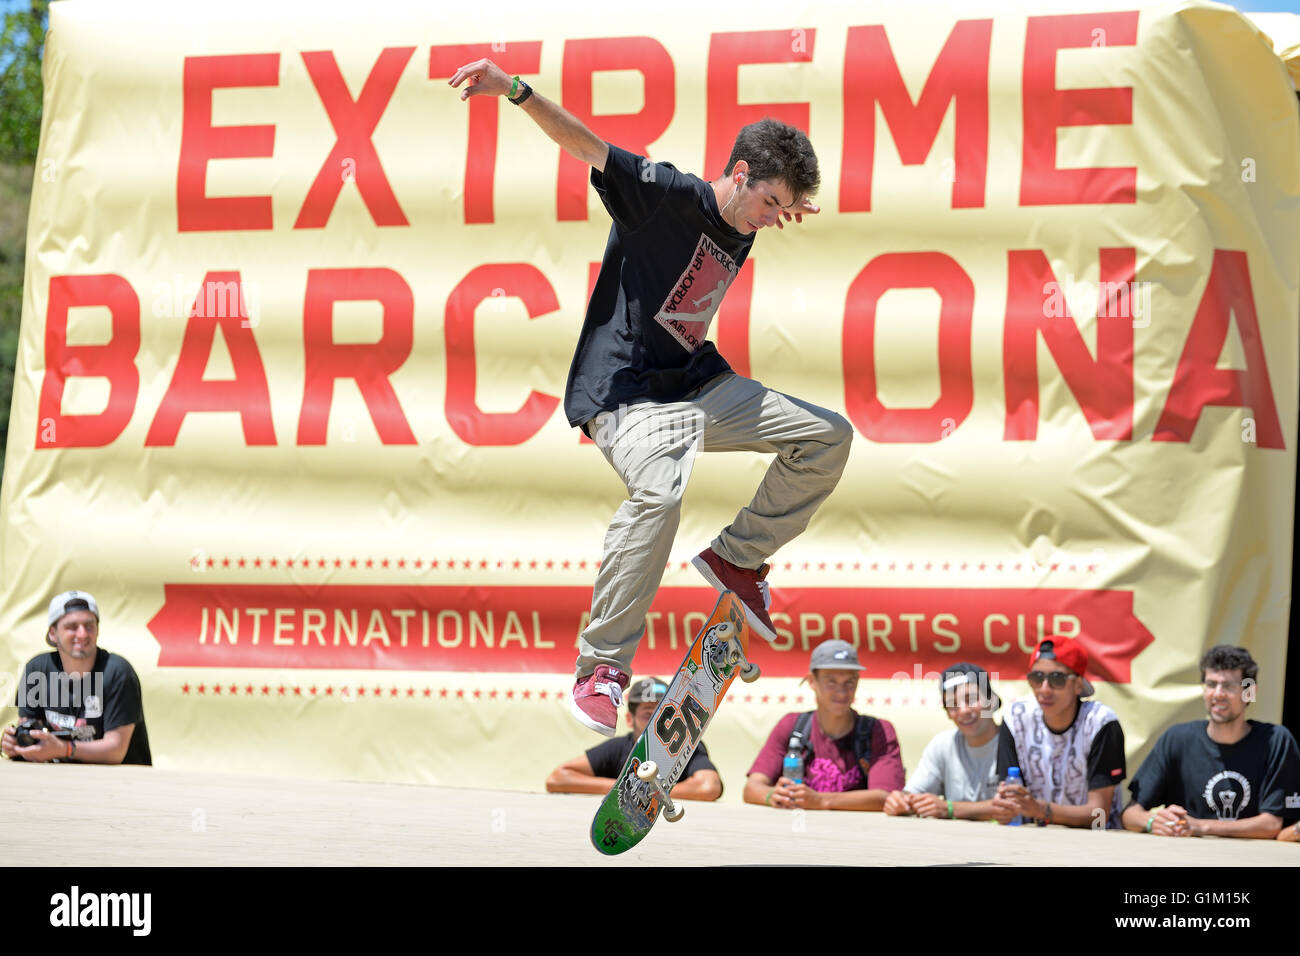 Barcelone - 28 juin : un skateur professionnel lors de la compétition de patinage artistique à LKXA Extreme Sports Jeux de Barcelone. Banque D'Images